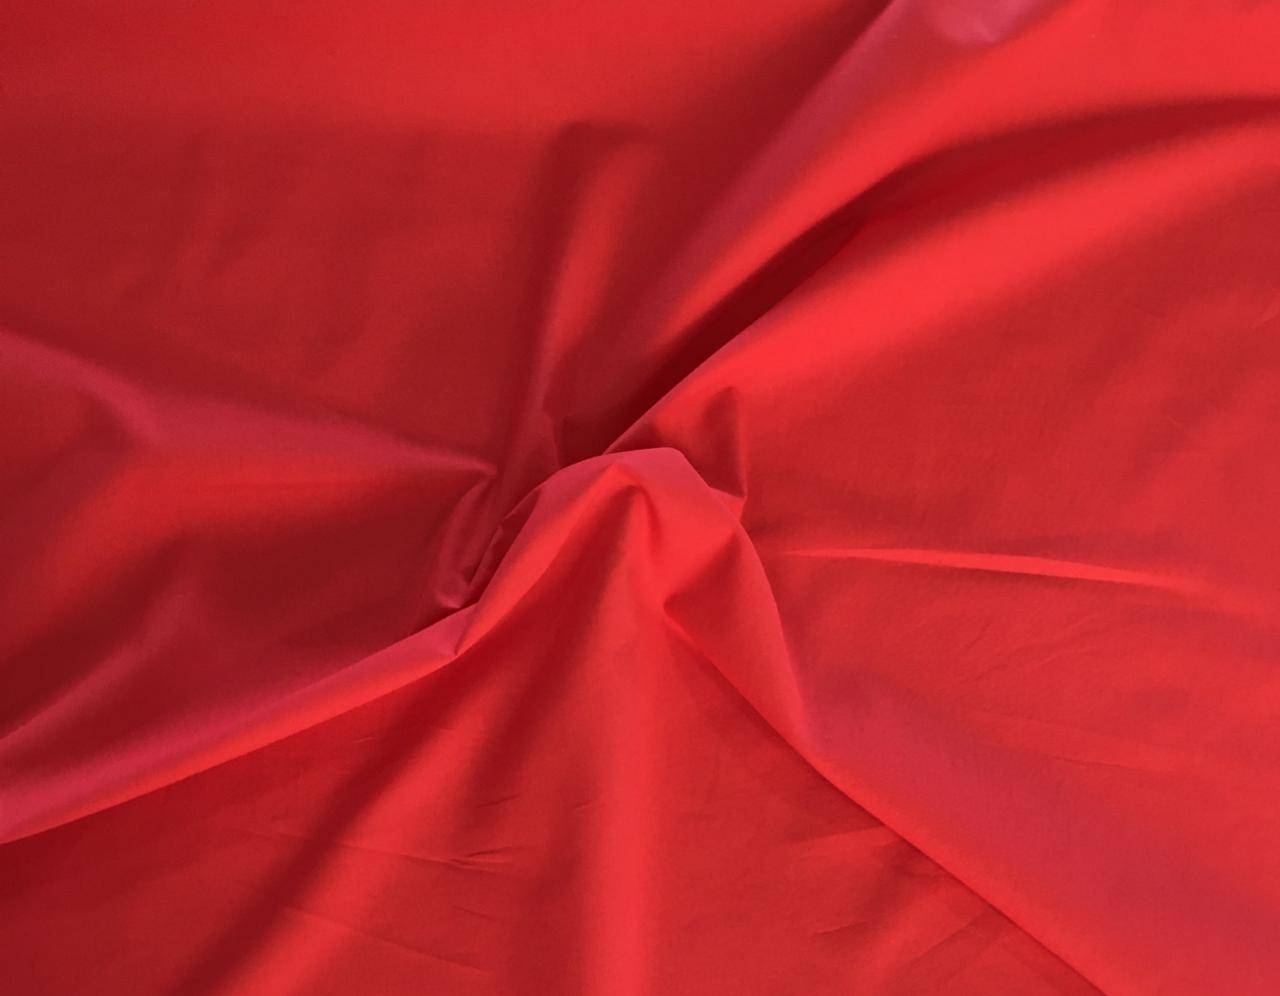 Tecido Tricoline Liso Vermelho - 50cm x 1,50mt - Loja Lider Tecidos